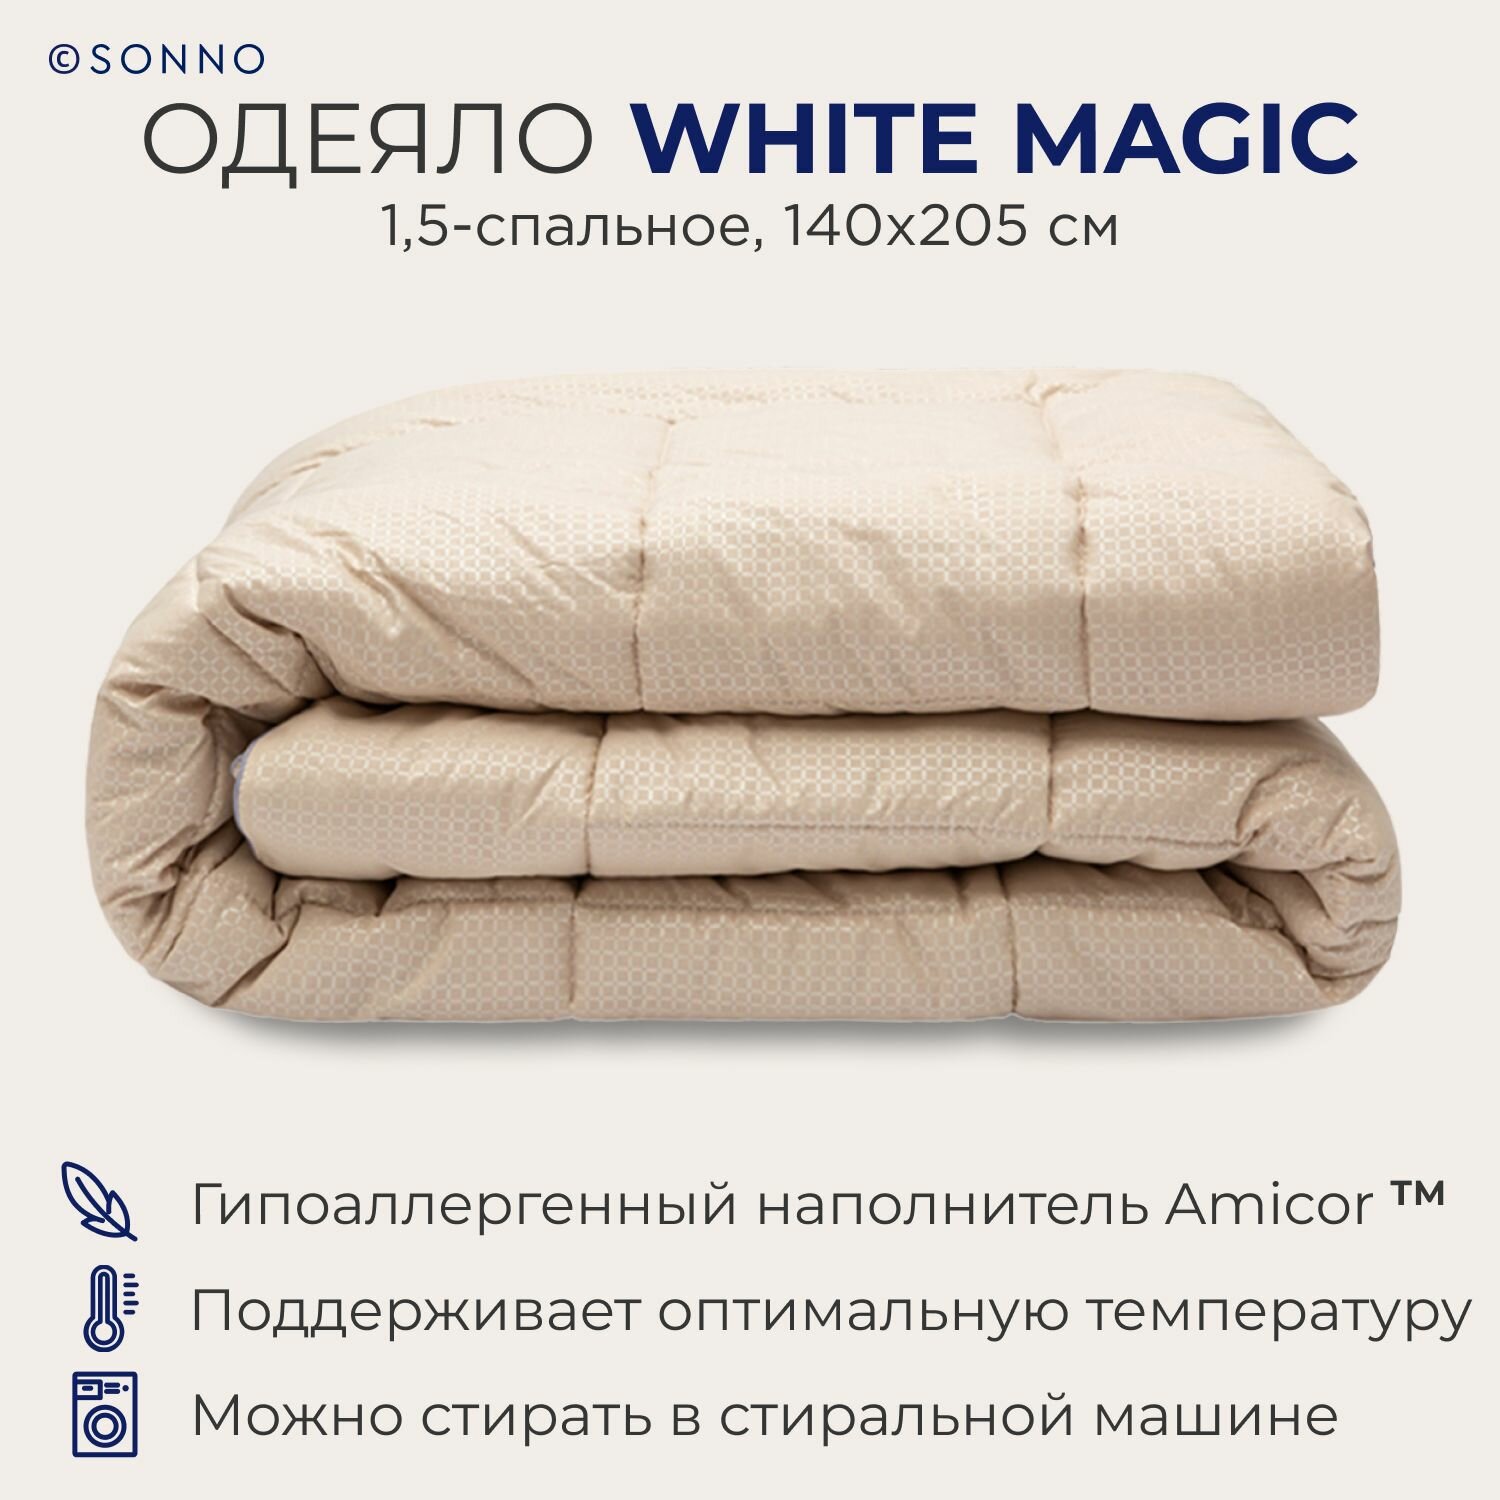 Одеяло SONNO WHITE MAGIC,1,5-спальное, всесезонное, гипоаллергенное, 140х205 см